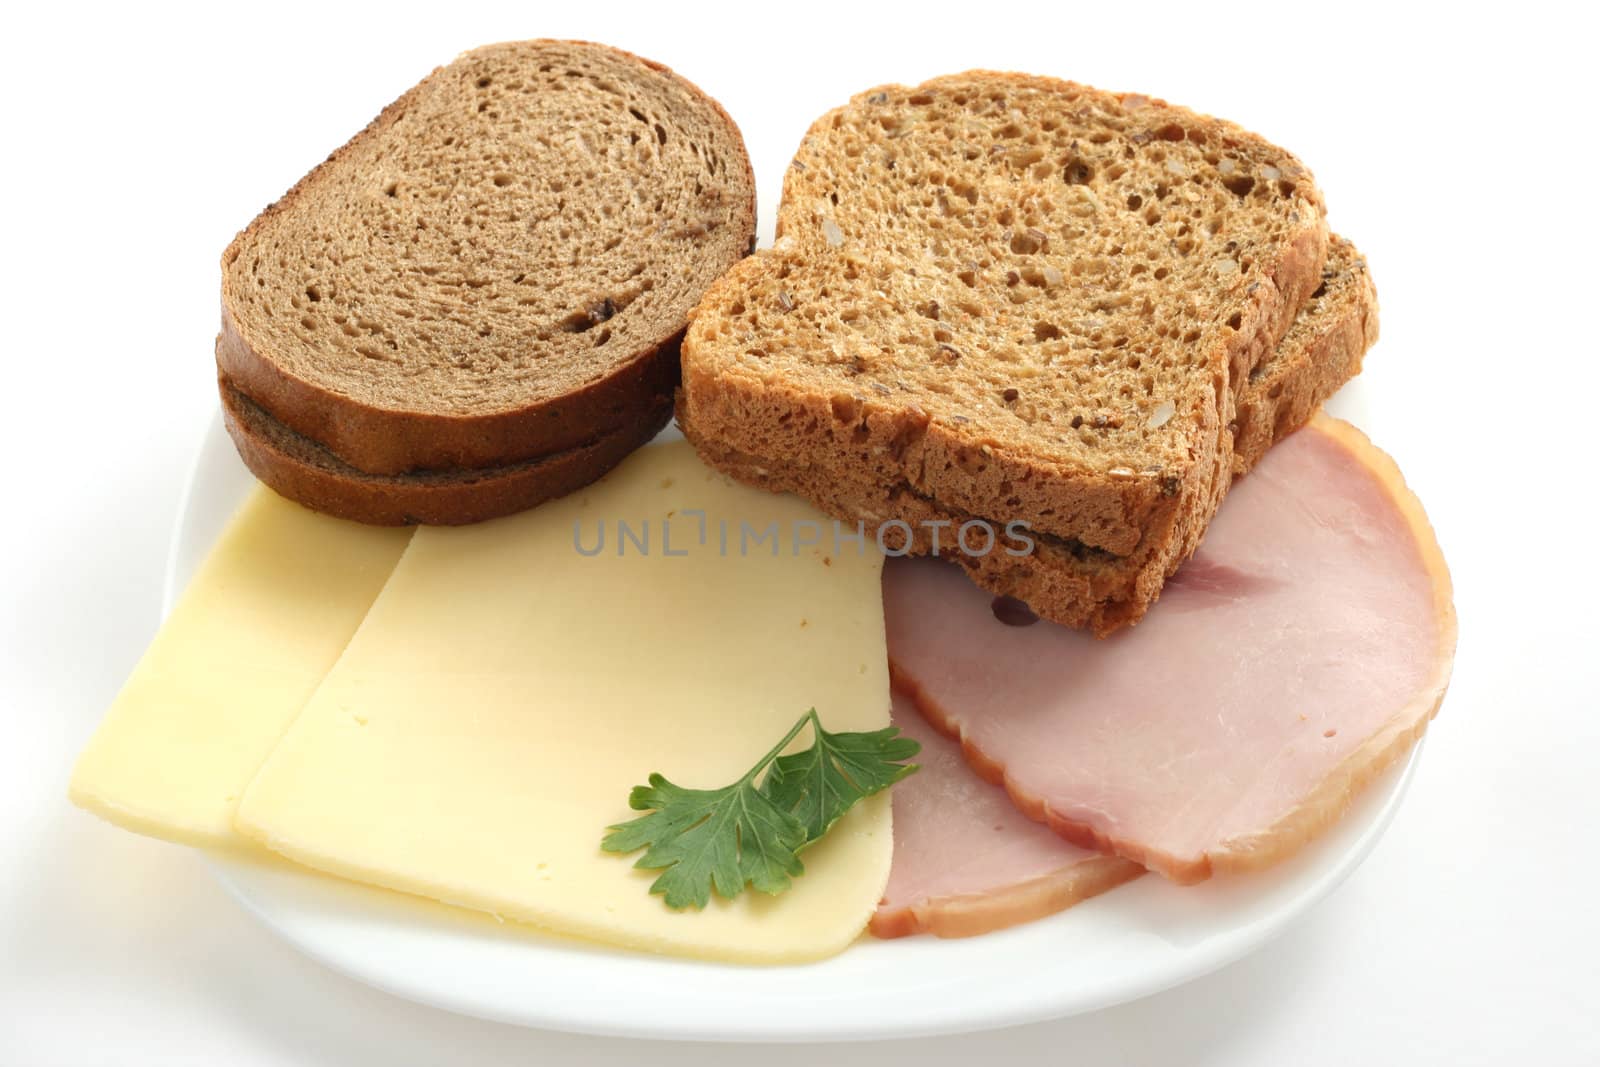 cheese, ham and bread by nataliamylova